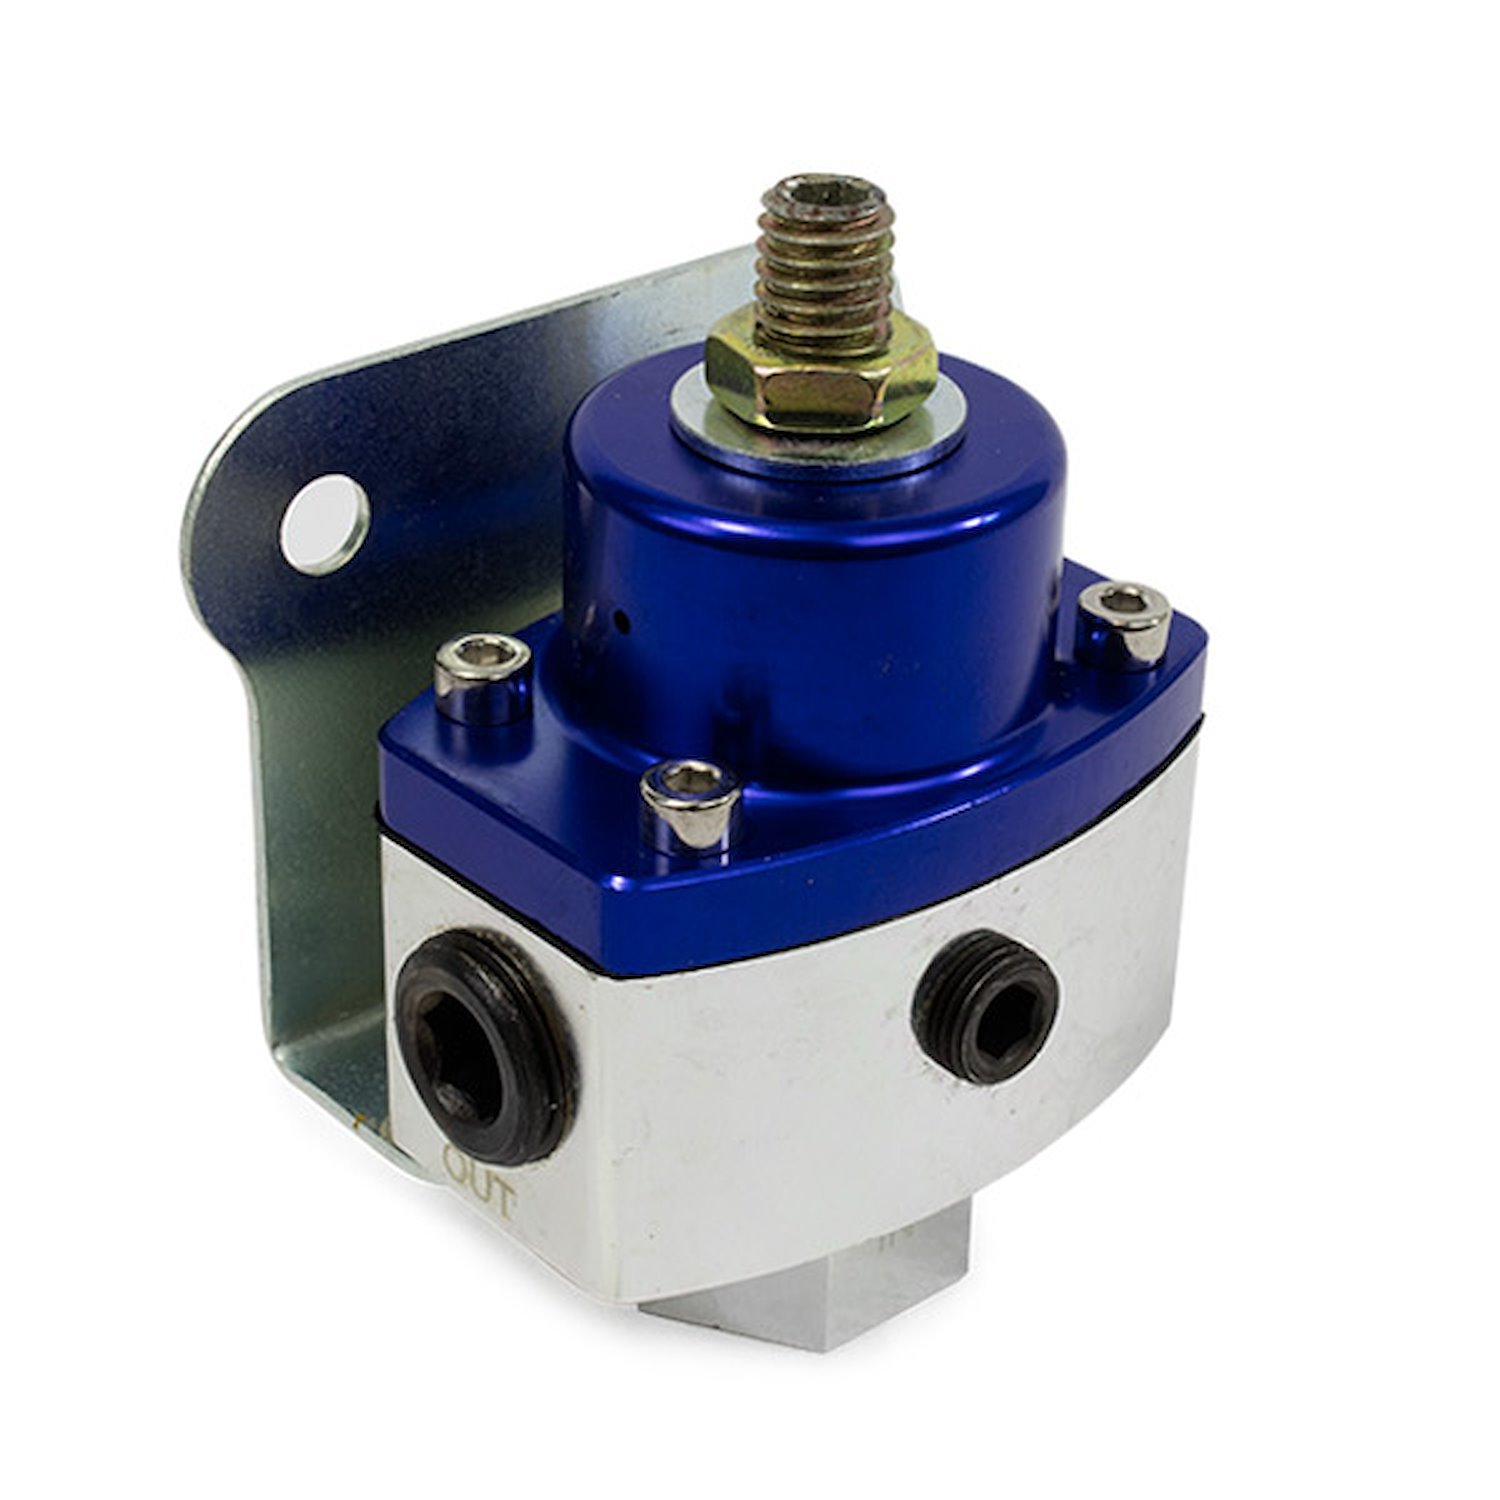 JM1057BL Fuel Pressure Regulator, 5-12, Blue